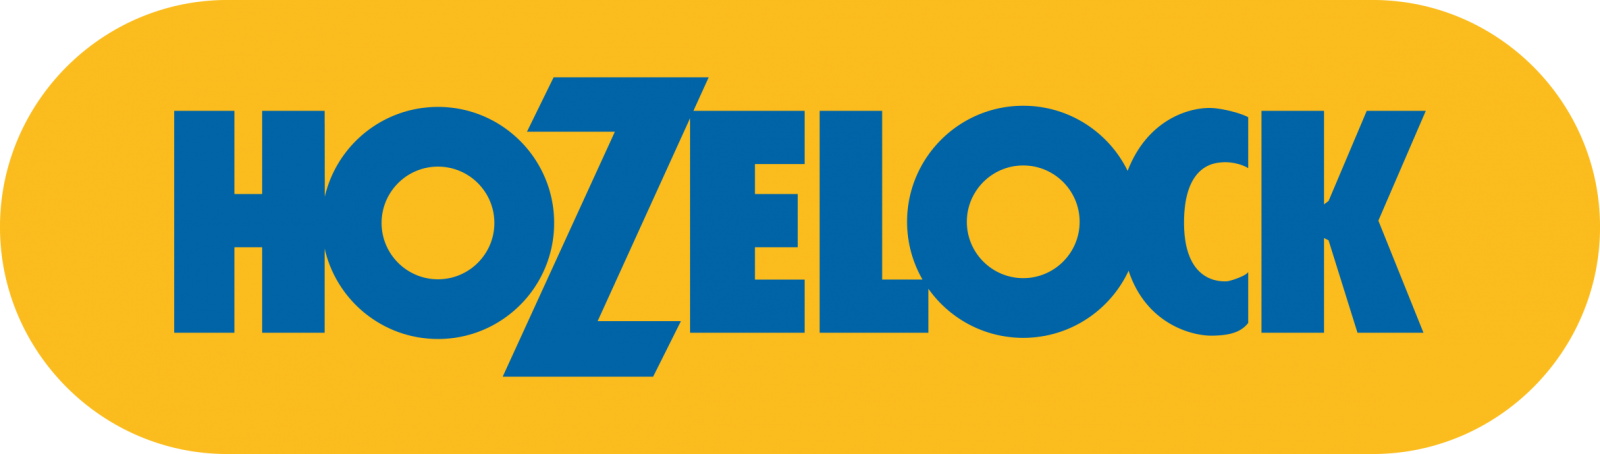 Hozelock-logo